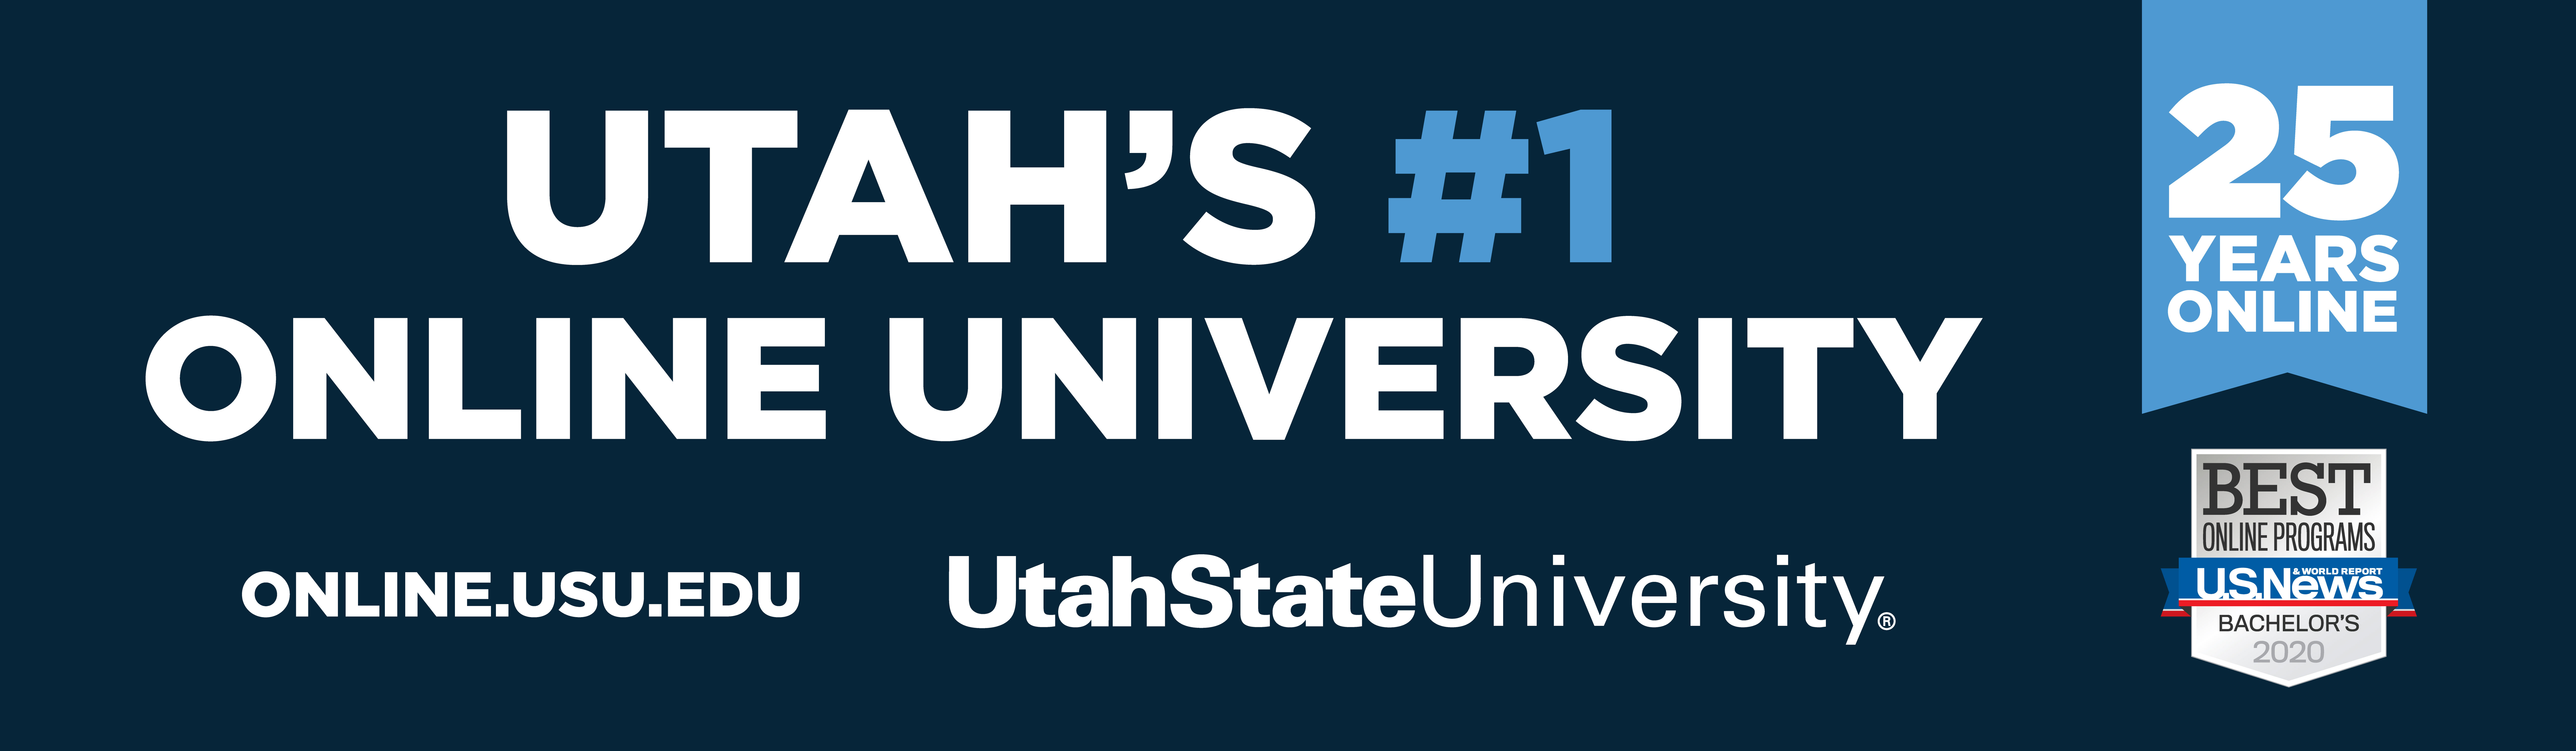 Utah's number one online university